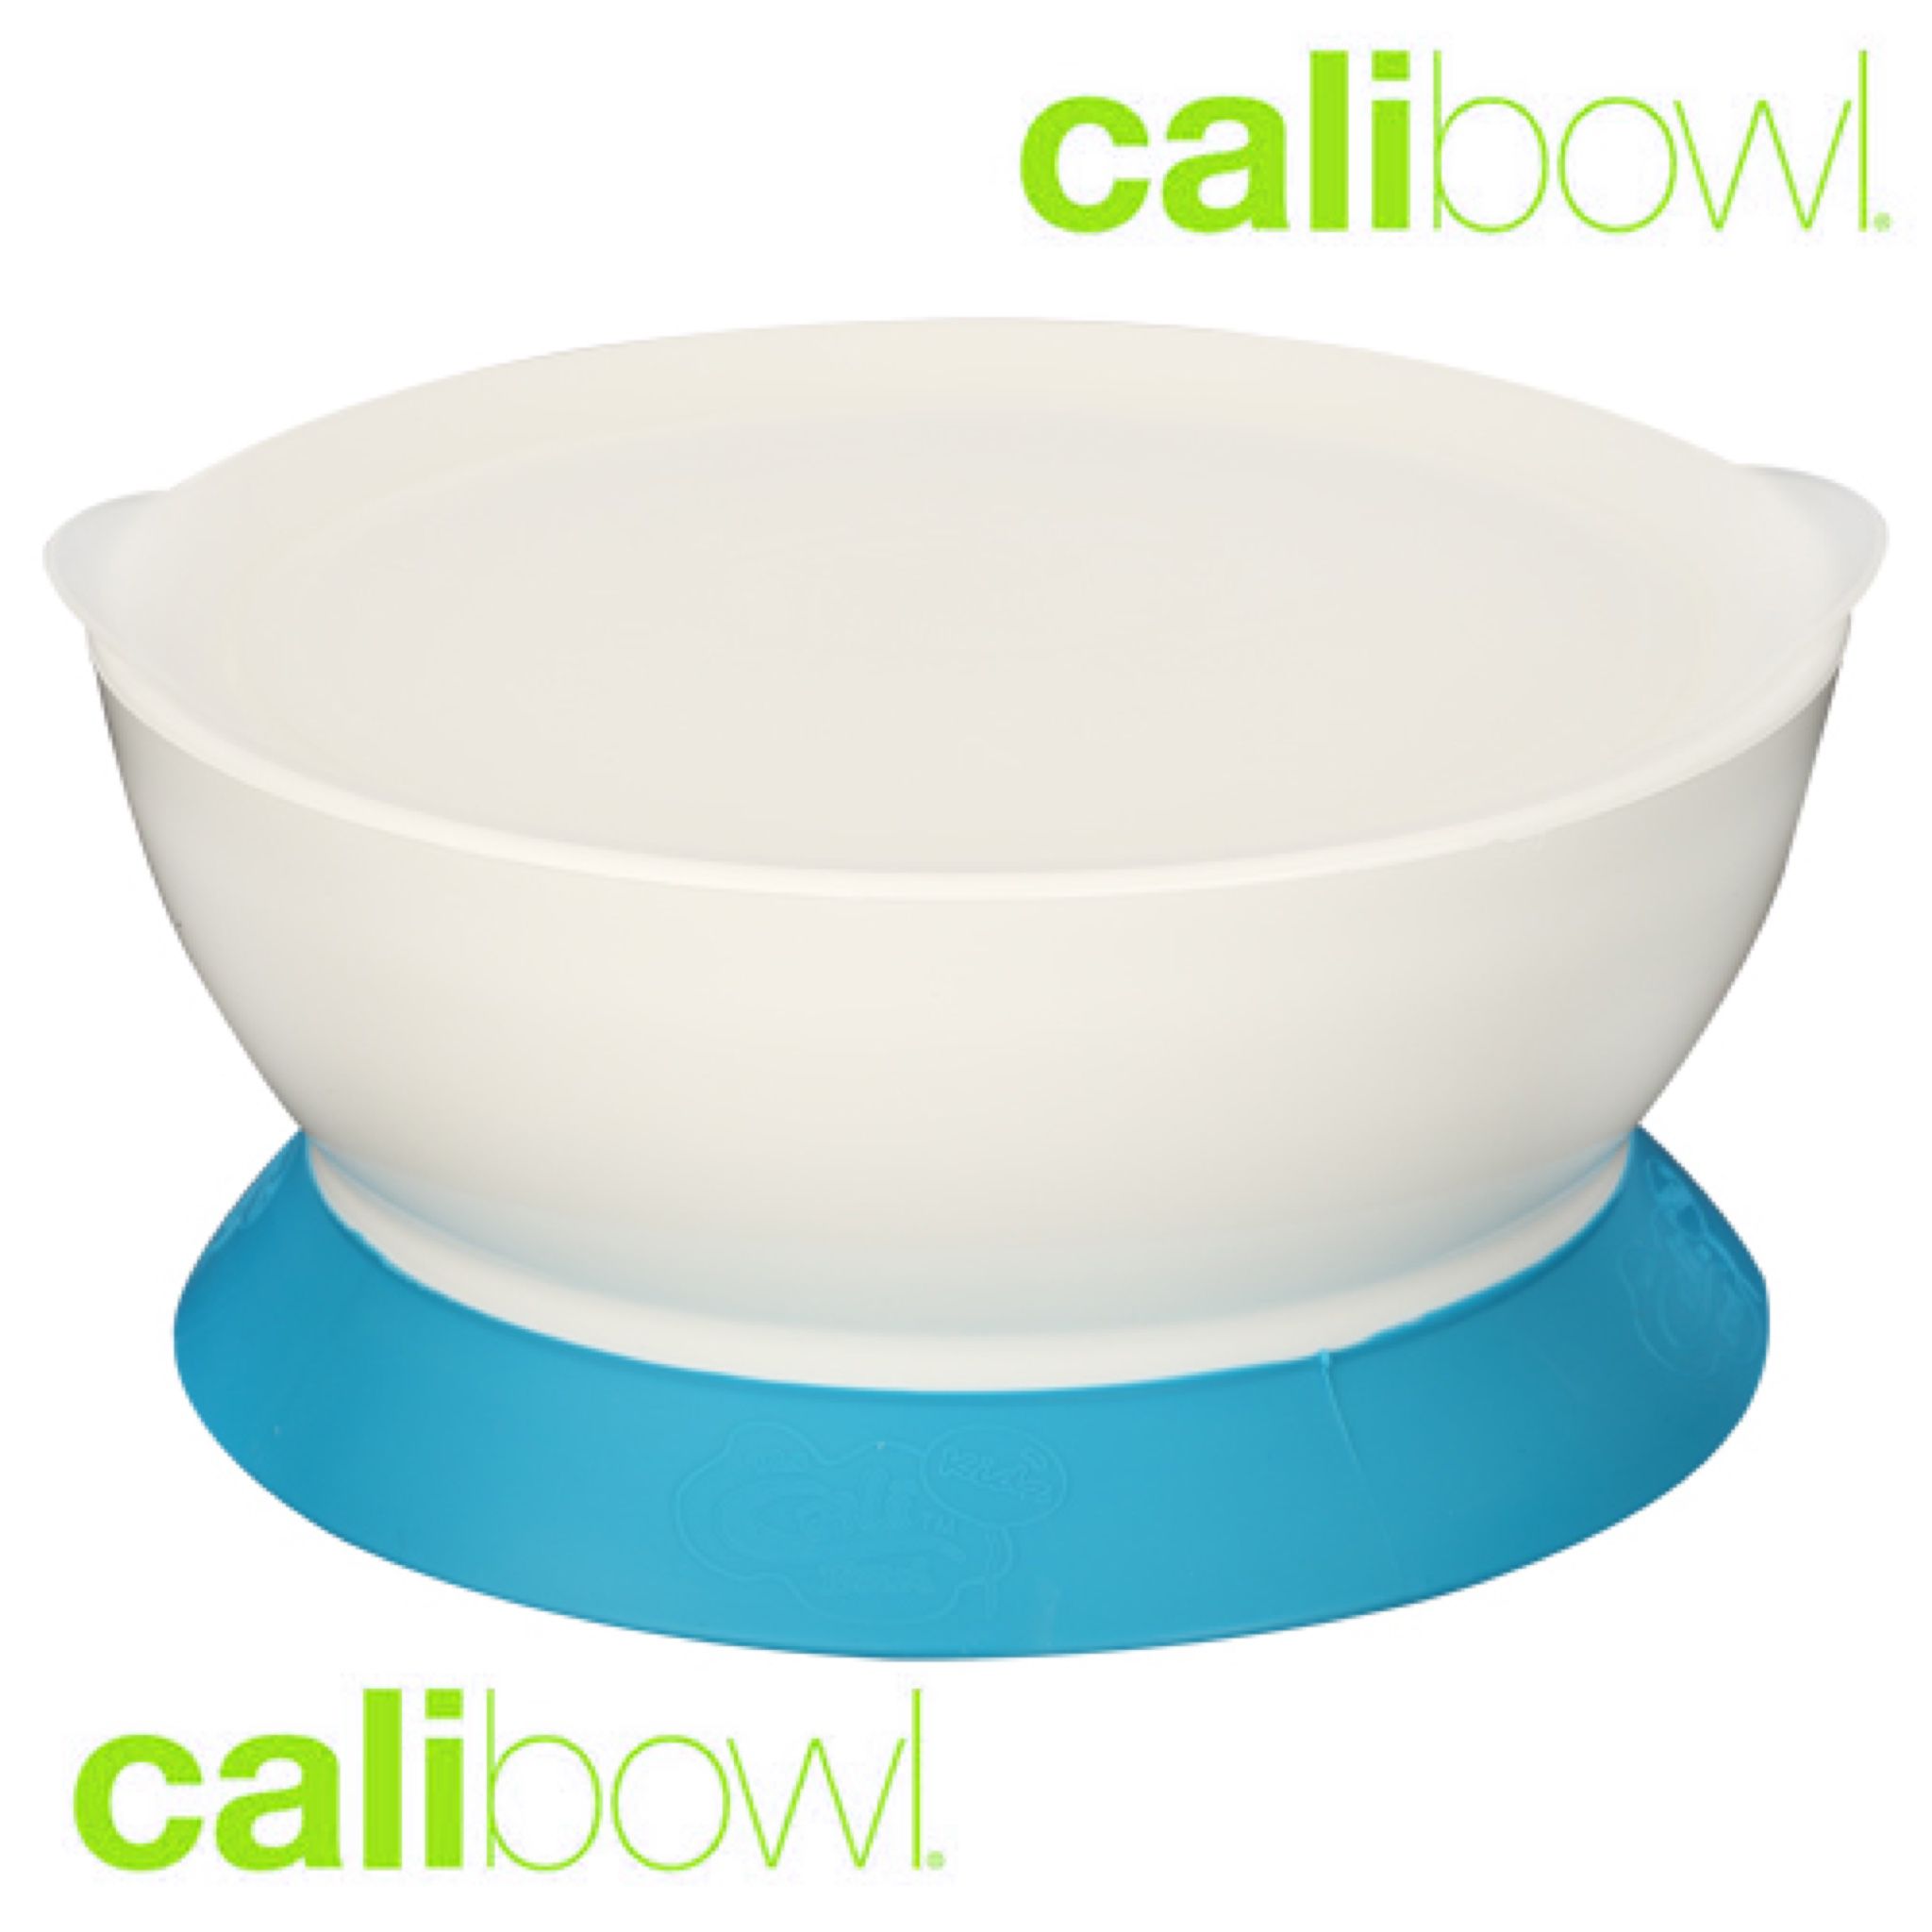 全新未拆封 【美國 Calibowl】專利防漏防滑幼兒吸盤碗 (單入附蓋)-藍色